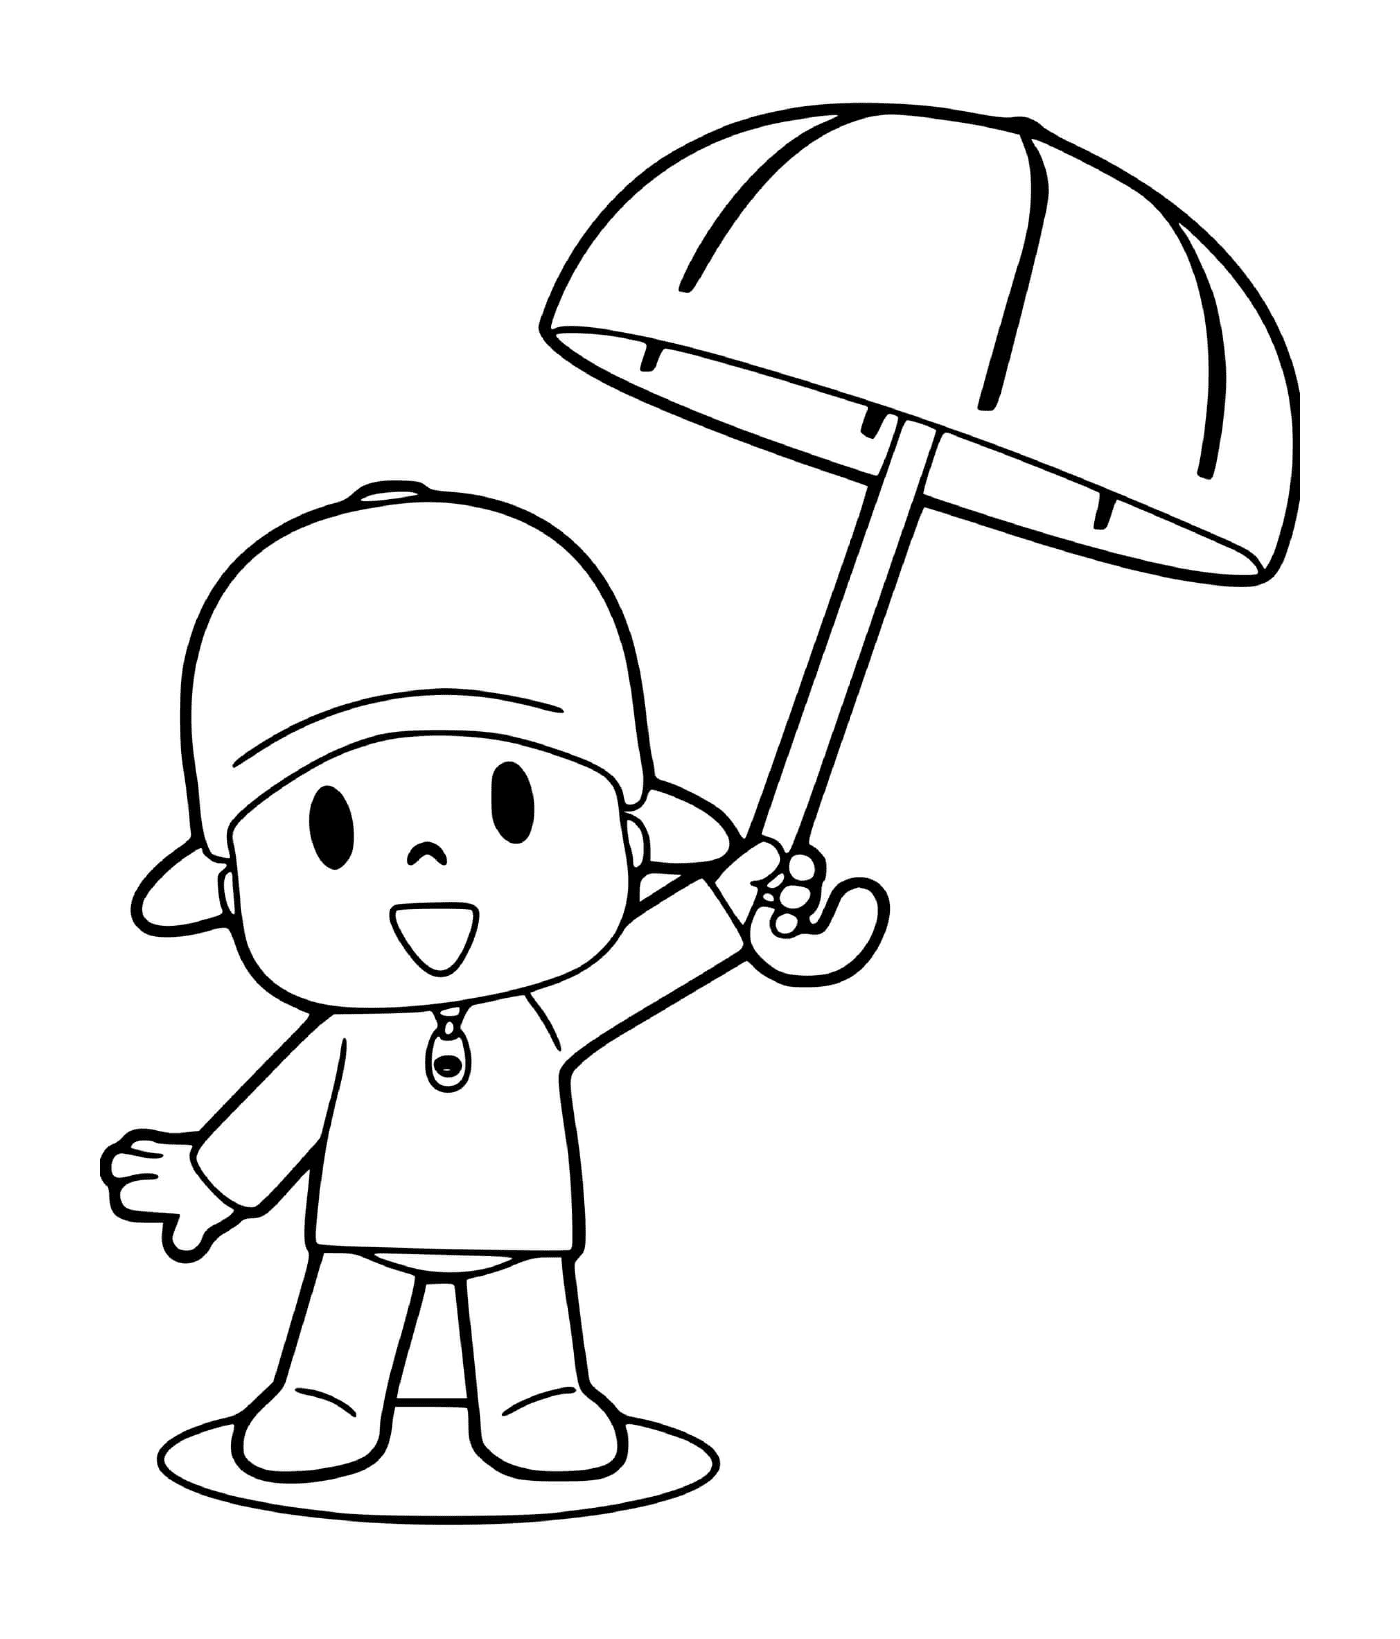 pocoyo se protege de la pluie avec un parapluie